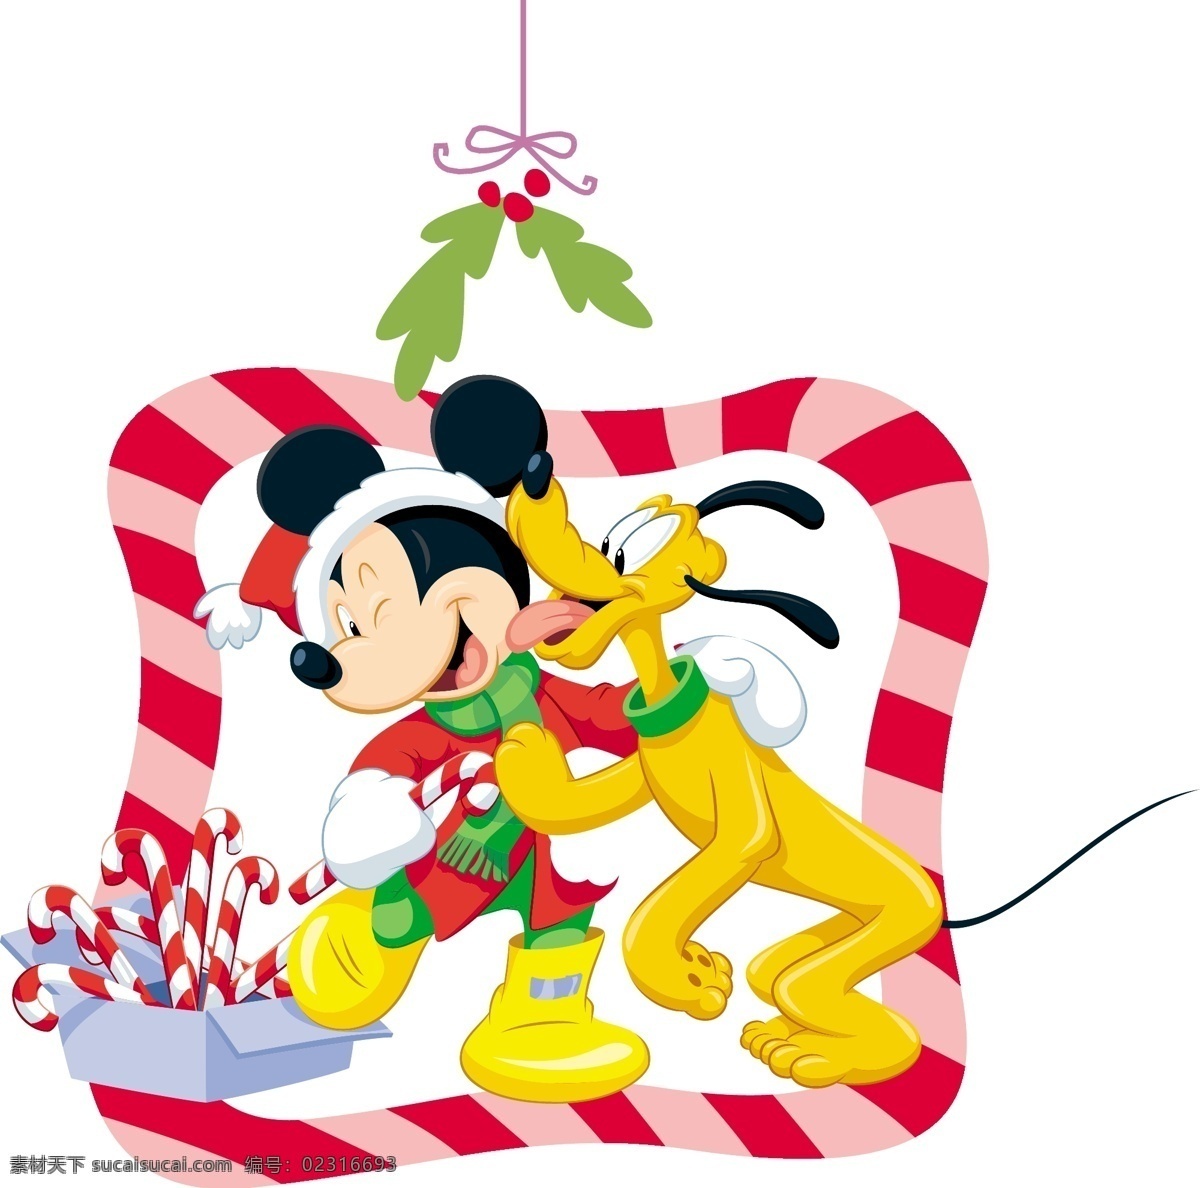 迪士尼 米奇 节日素材 圣诞节 矢量图库 迪士尼米奇 矢量 其他节日